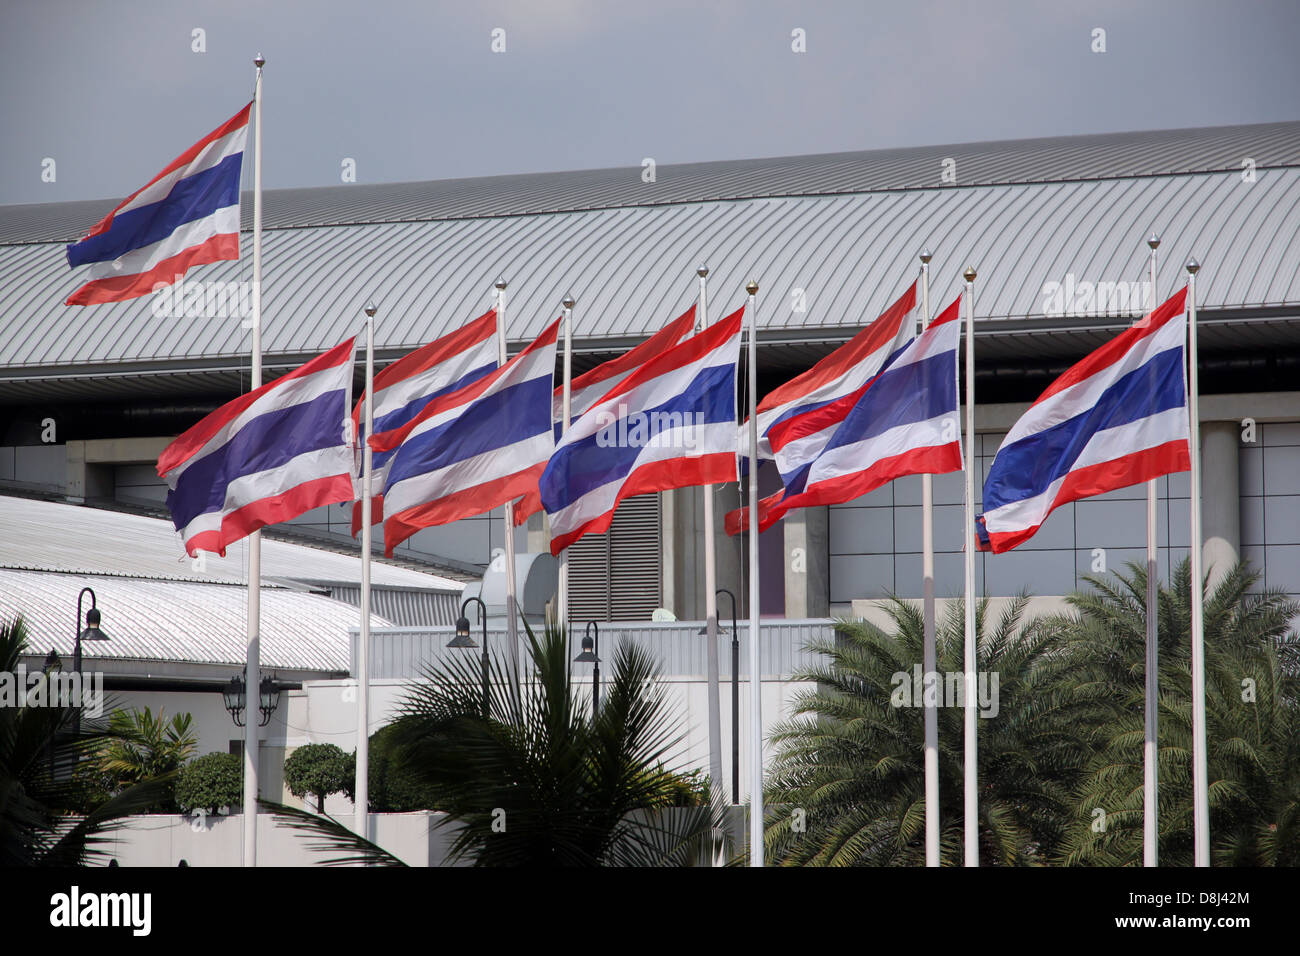 Le drapeau de la Thaïlande touchée par fort vent.Le Drapeau : est rouge, blanc et bleu. Banque D'Images